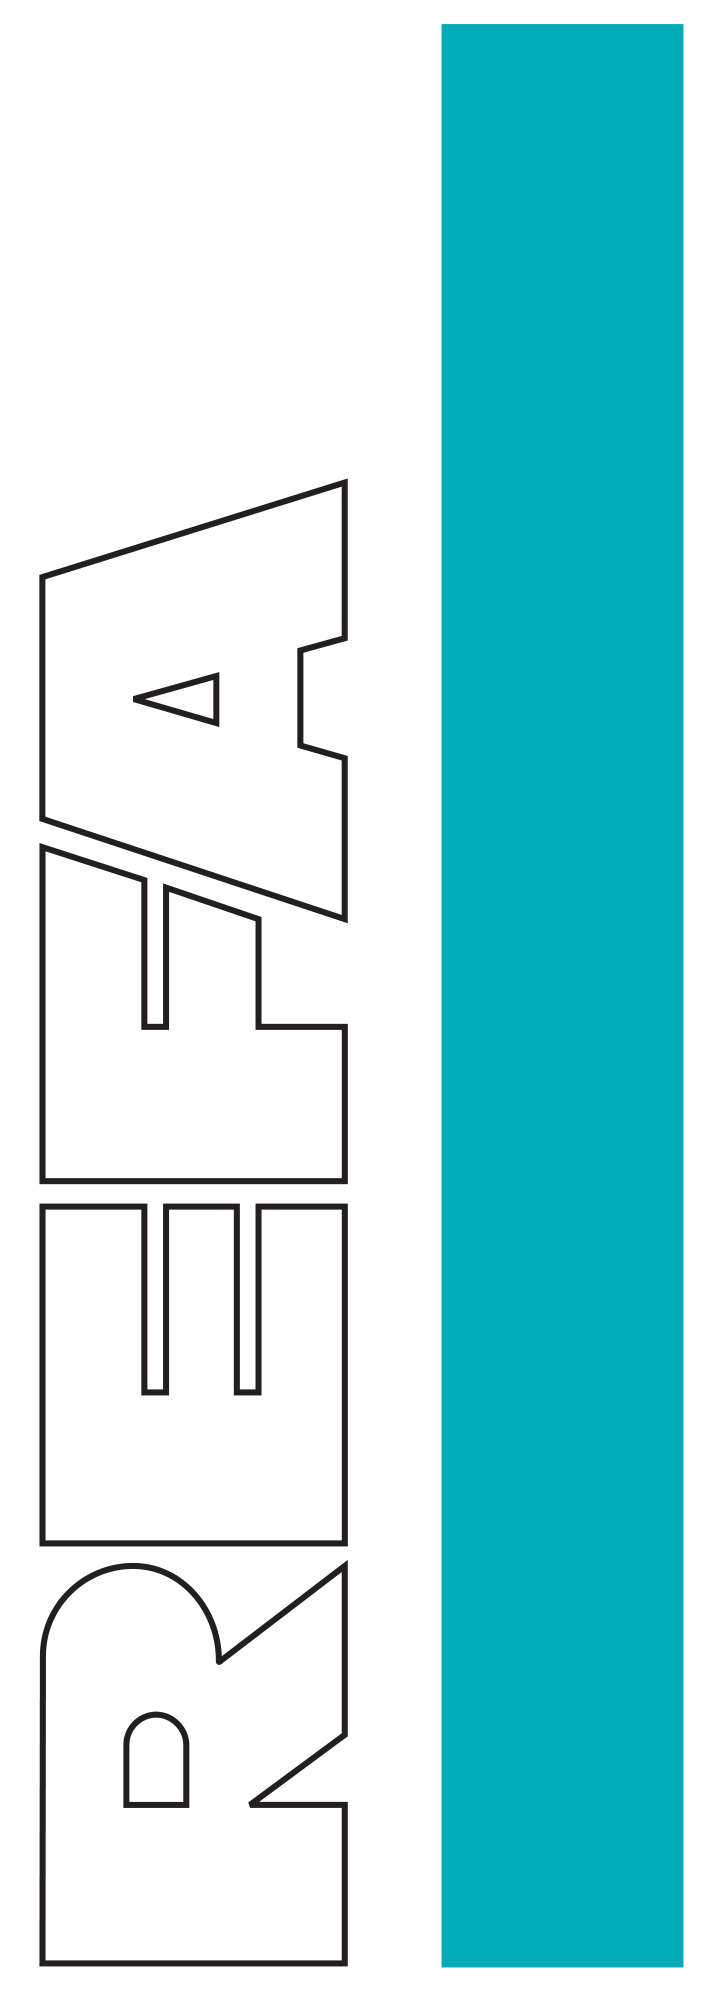 Refa logo svg hochkant